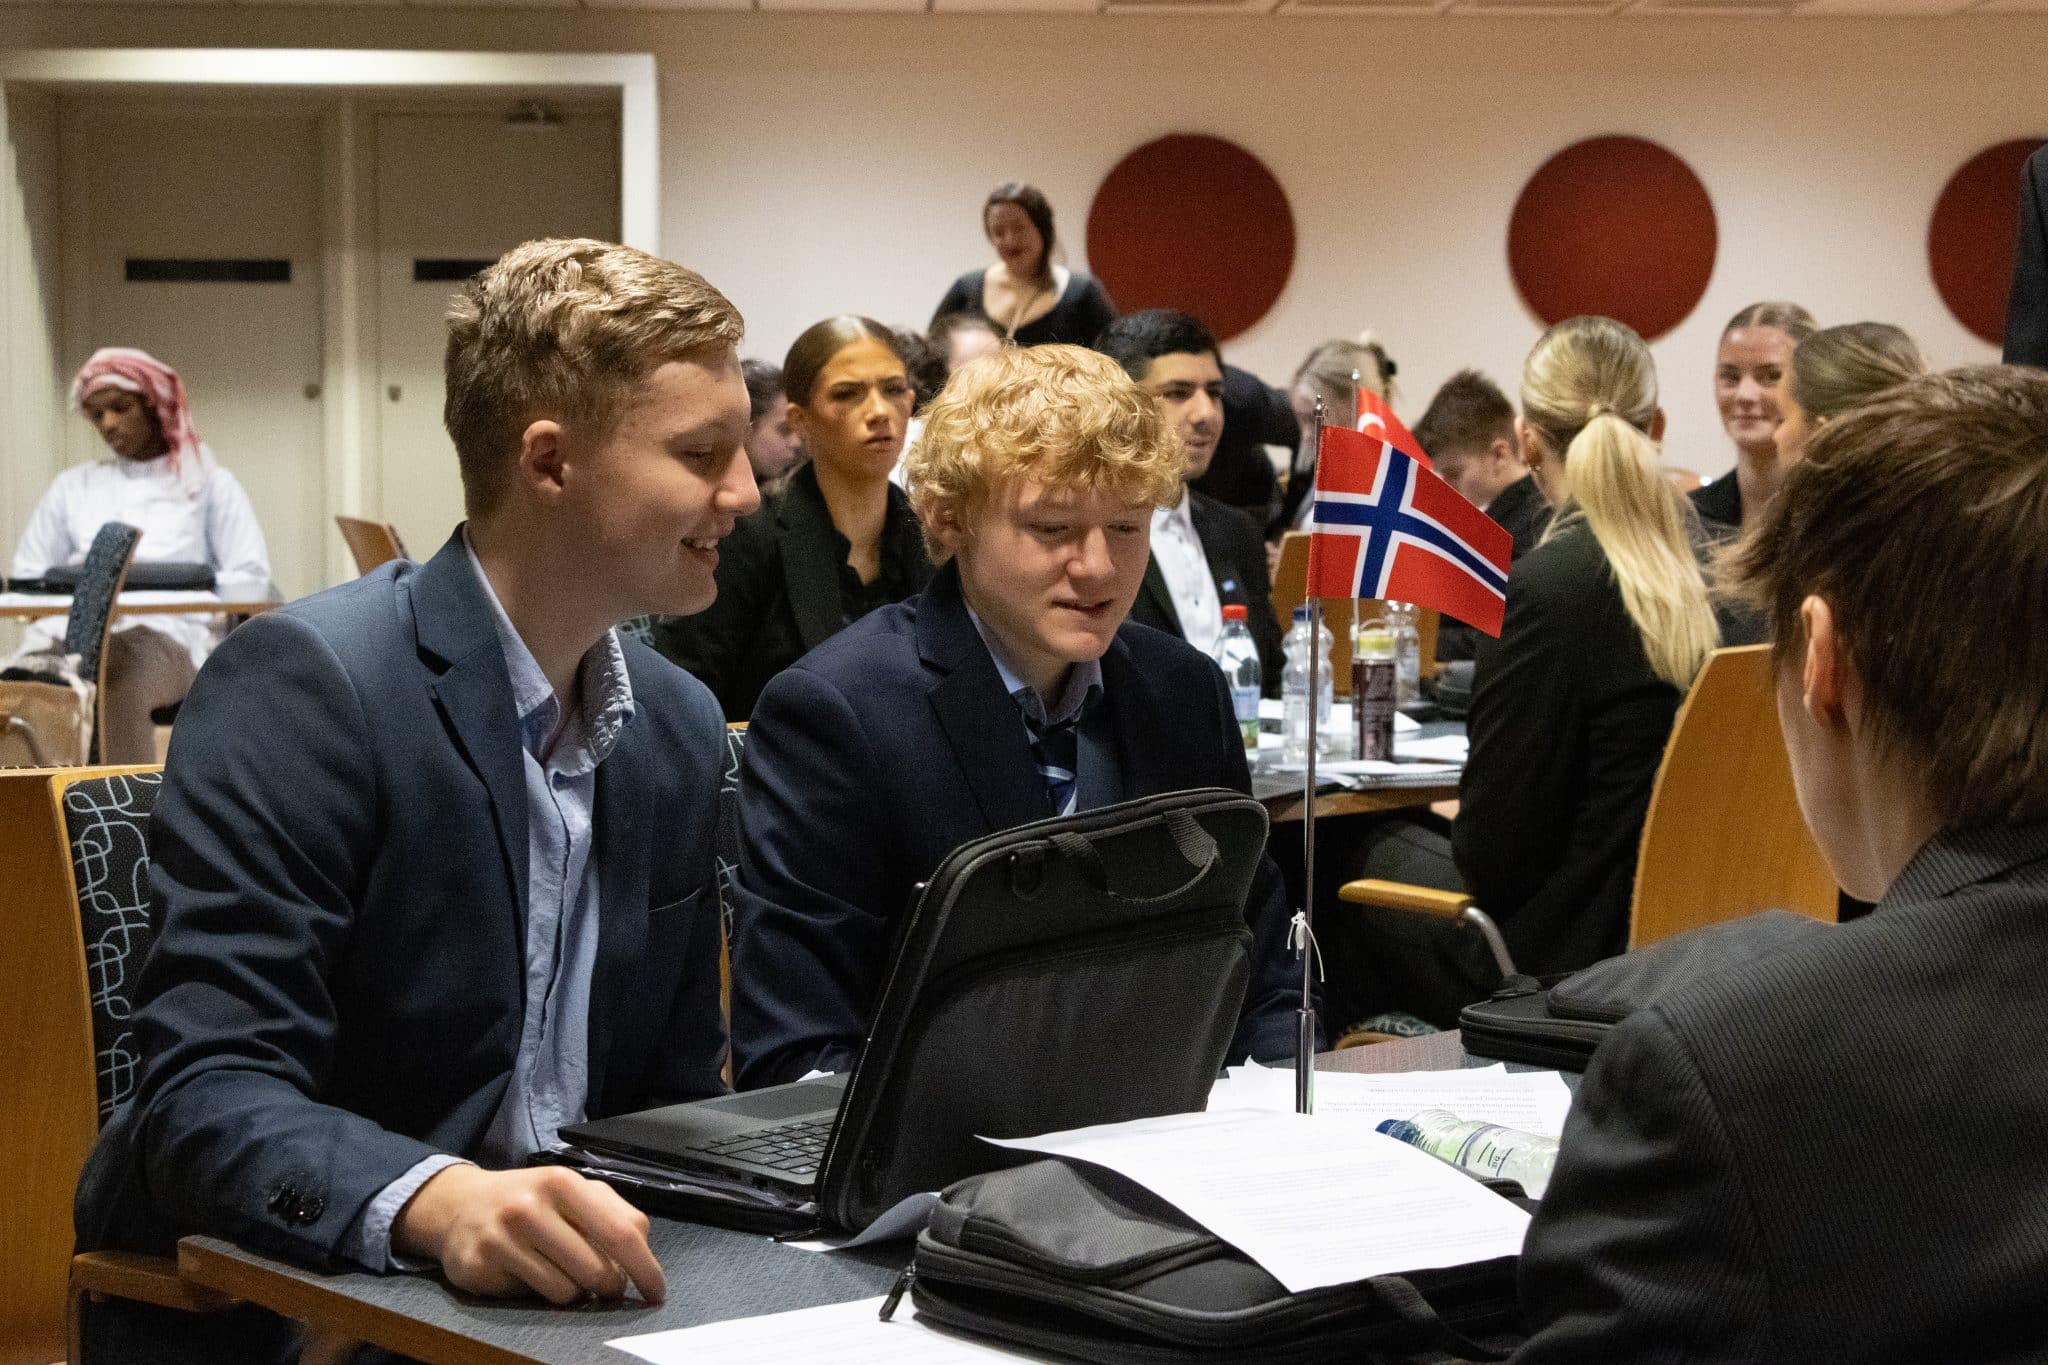 En grupp elever runt ett bord och Norges flagga i mitten.